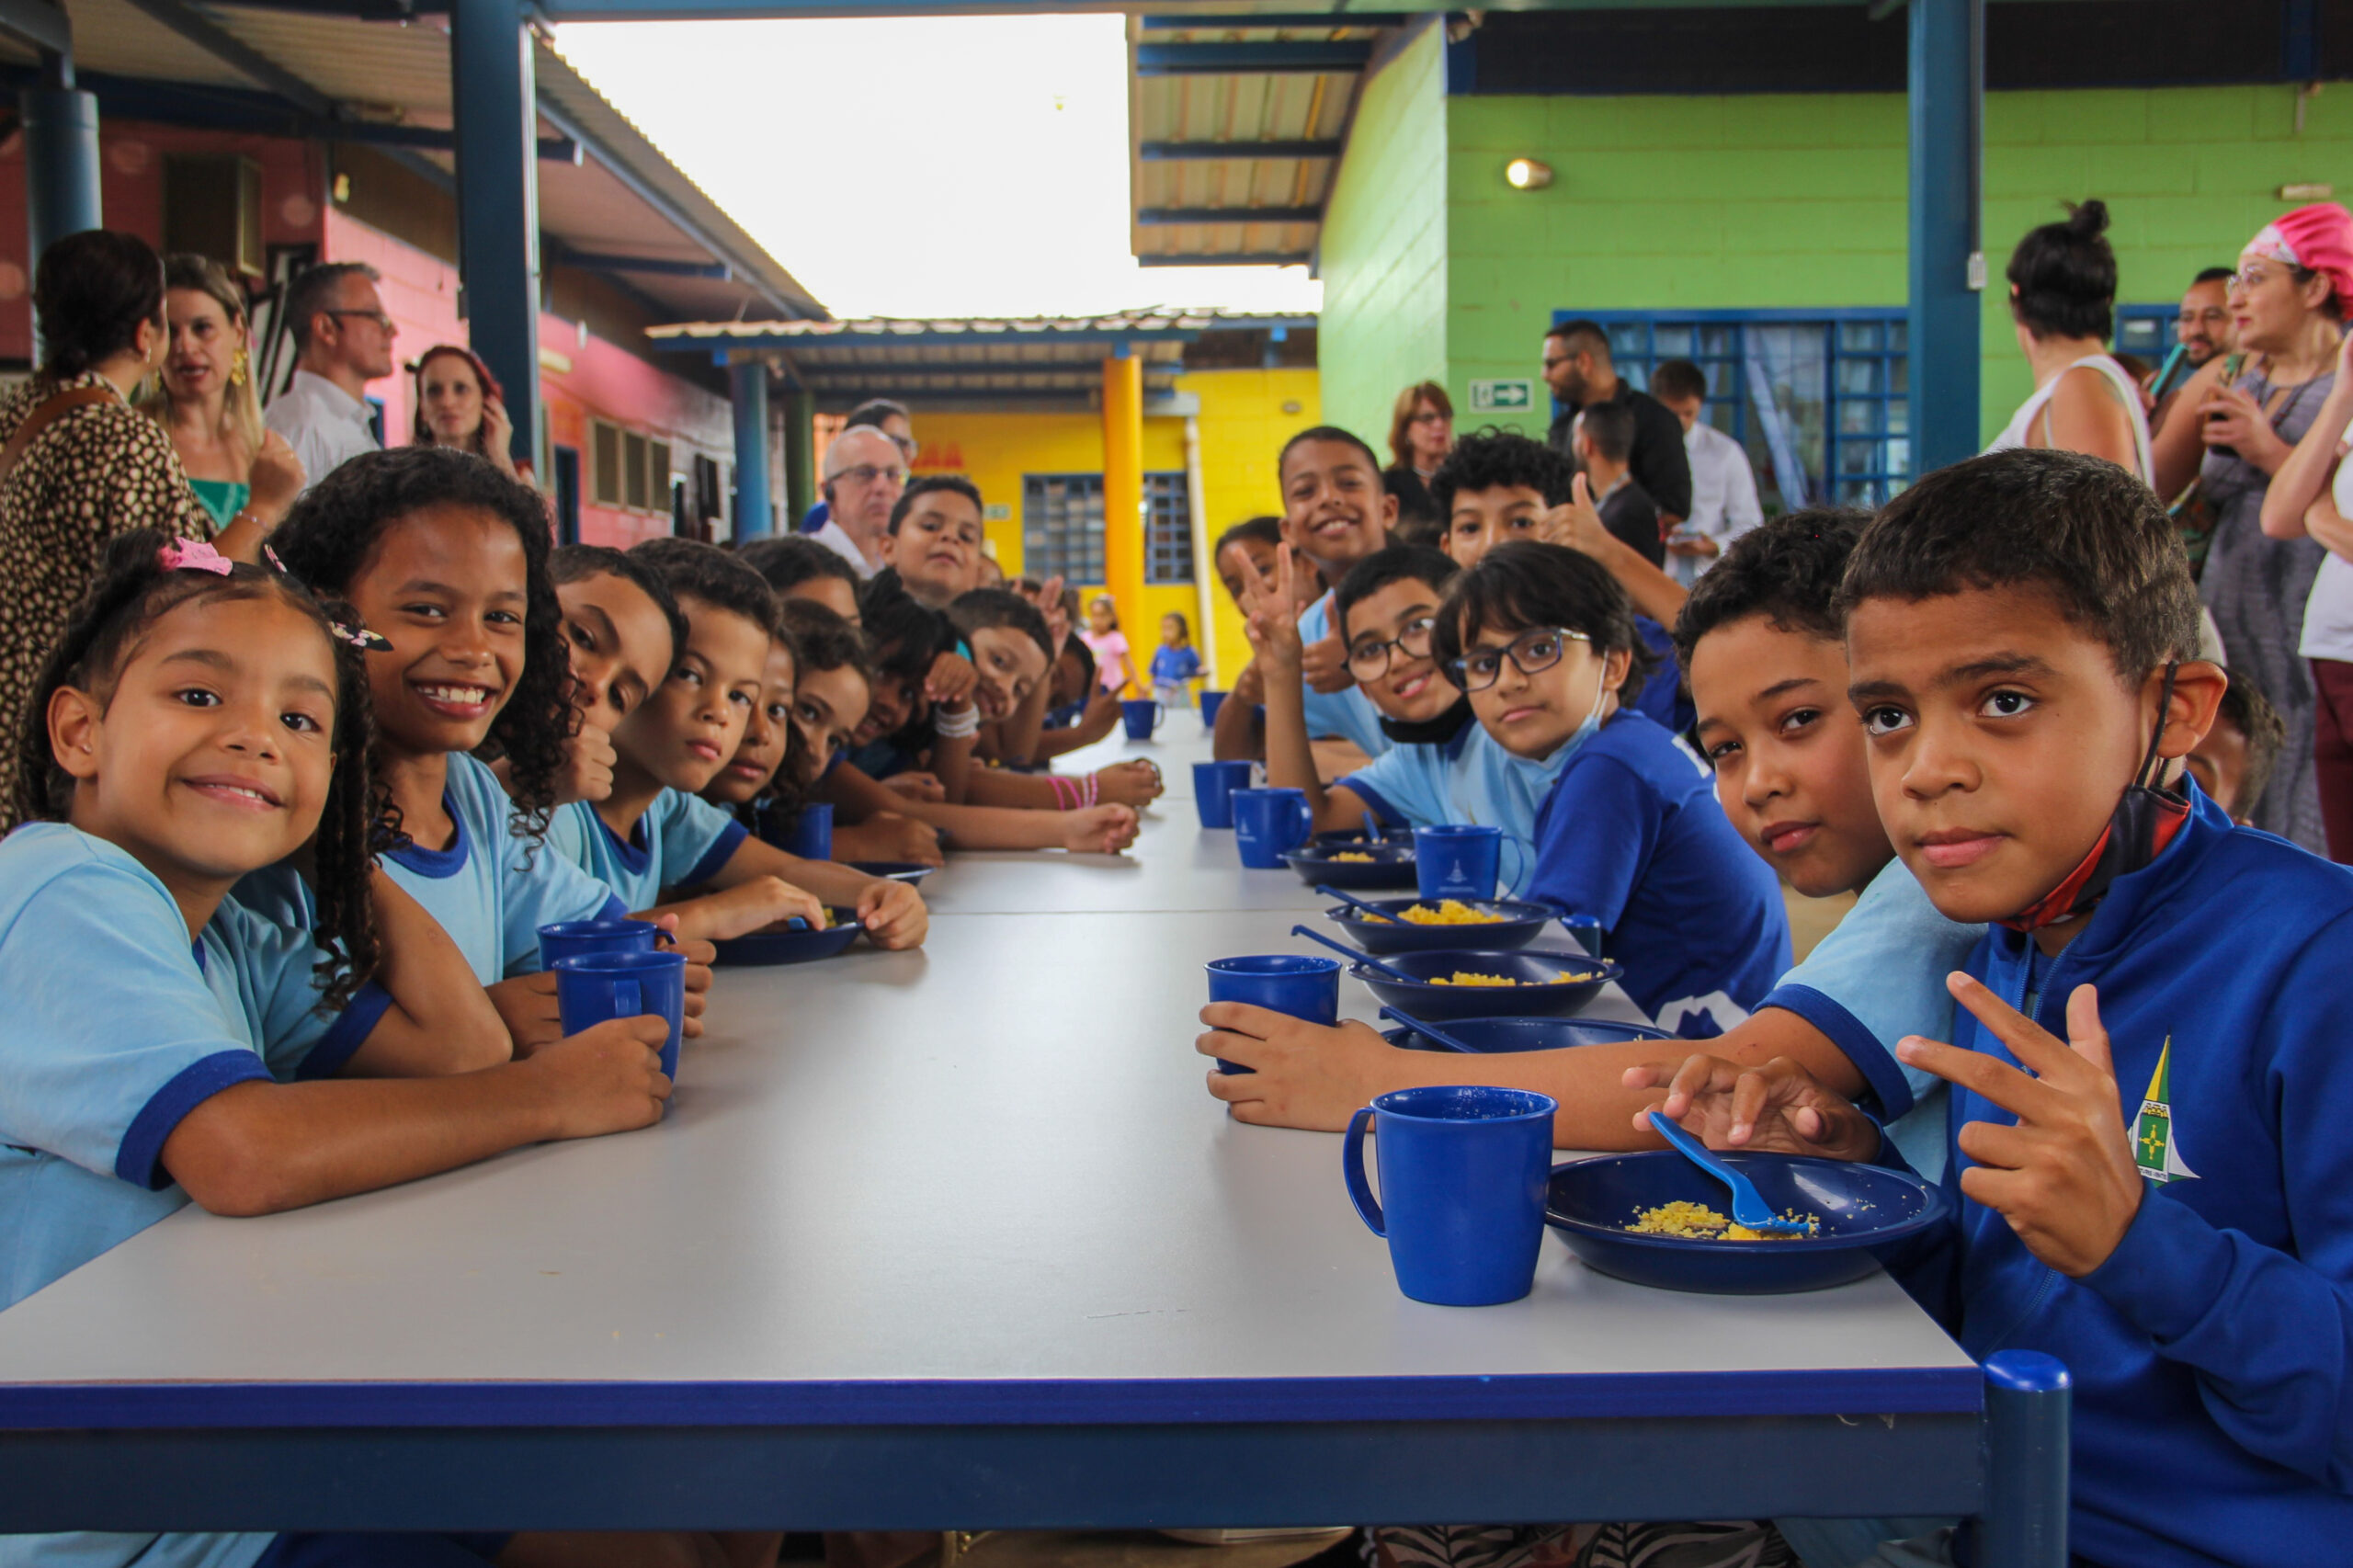 Crianças de uniforme azul comem sua refeição escolar, composta por suco e cuscuz, em uma escola pública brasileira.